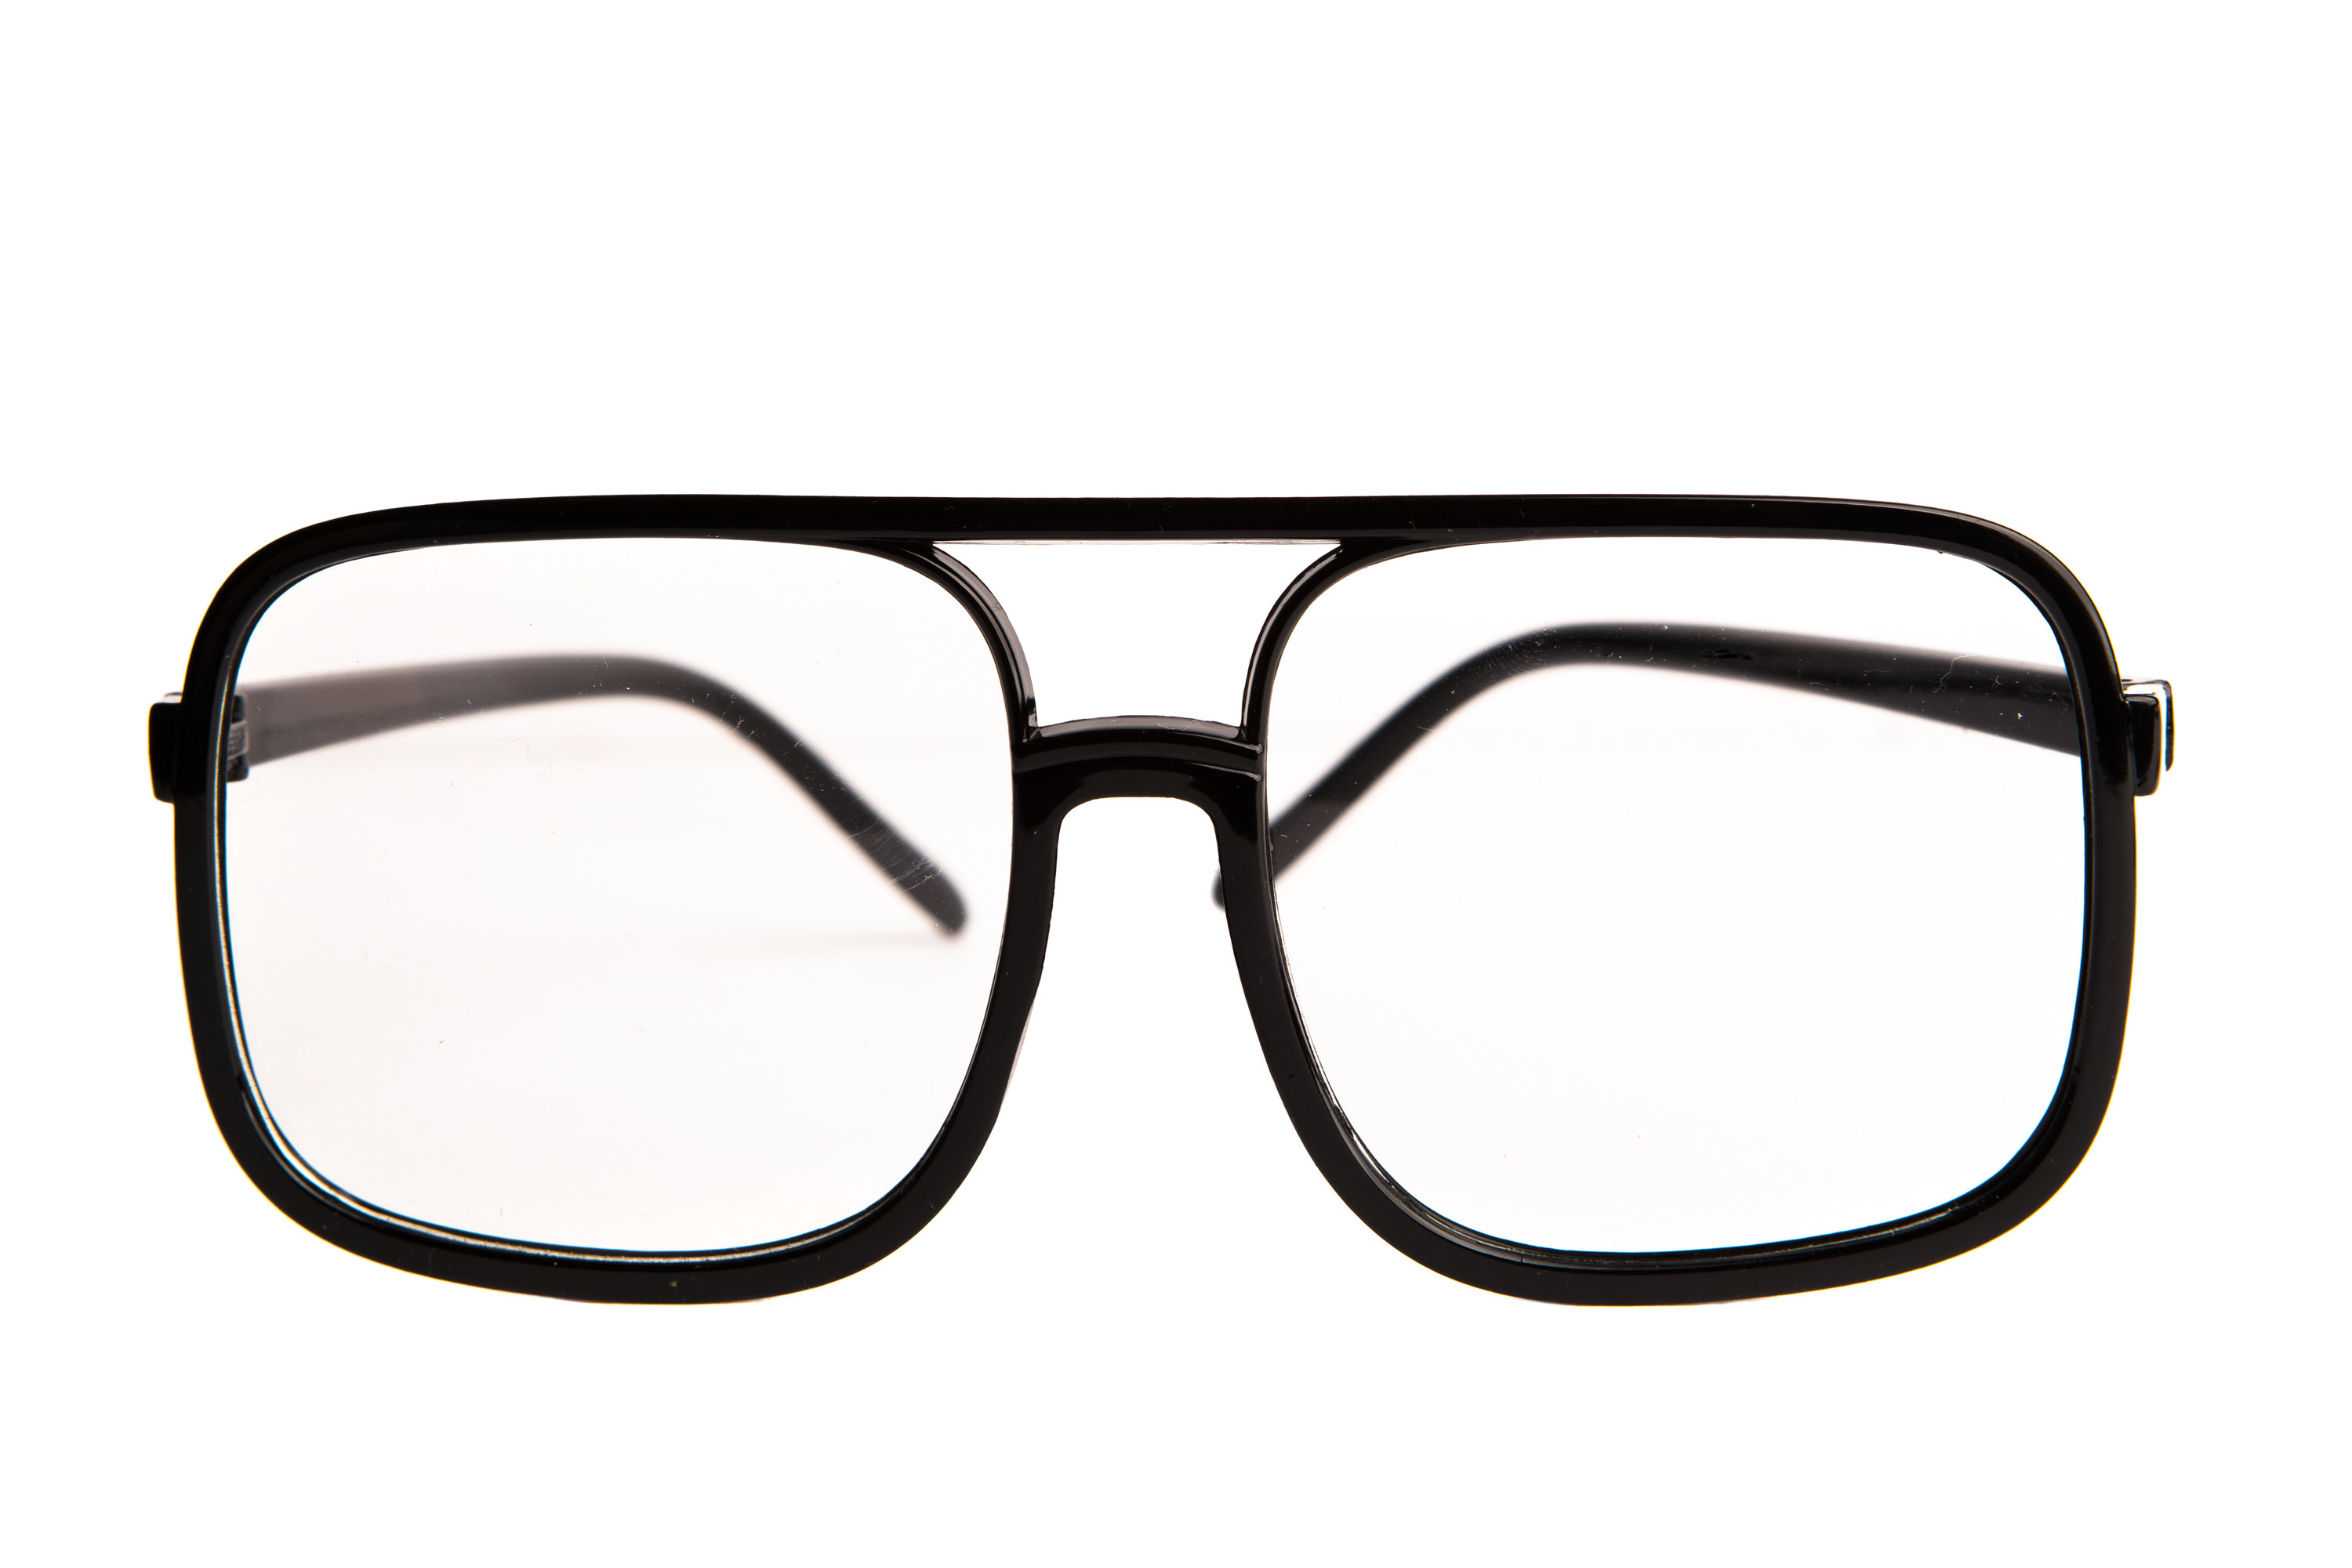 a pair of eyeglasses